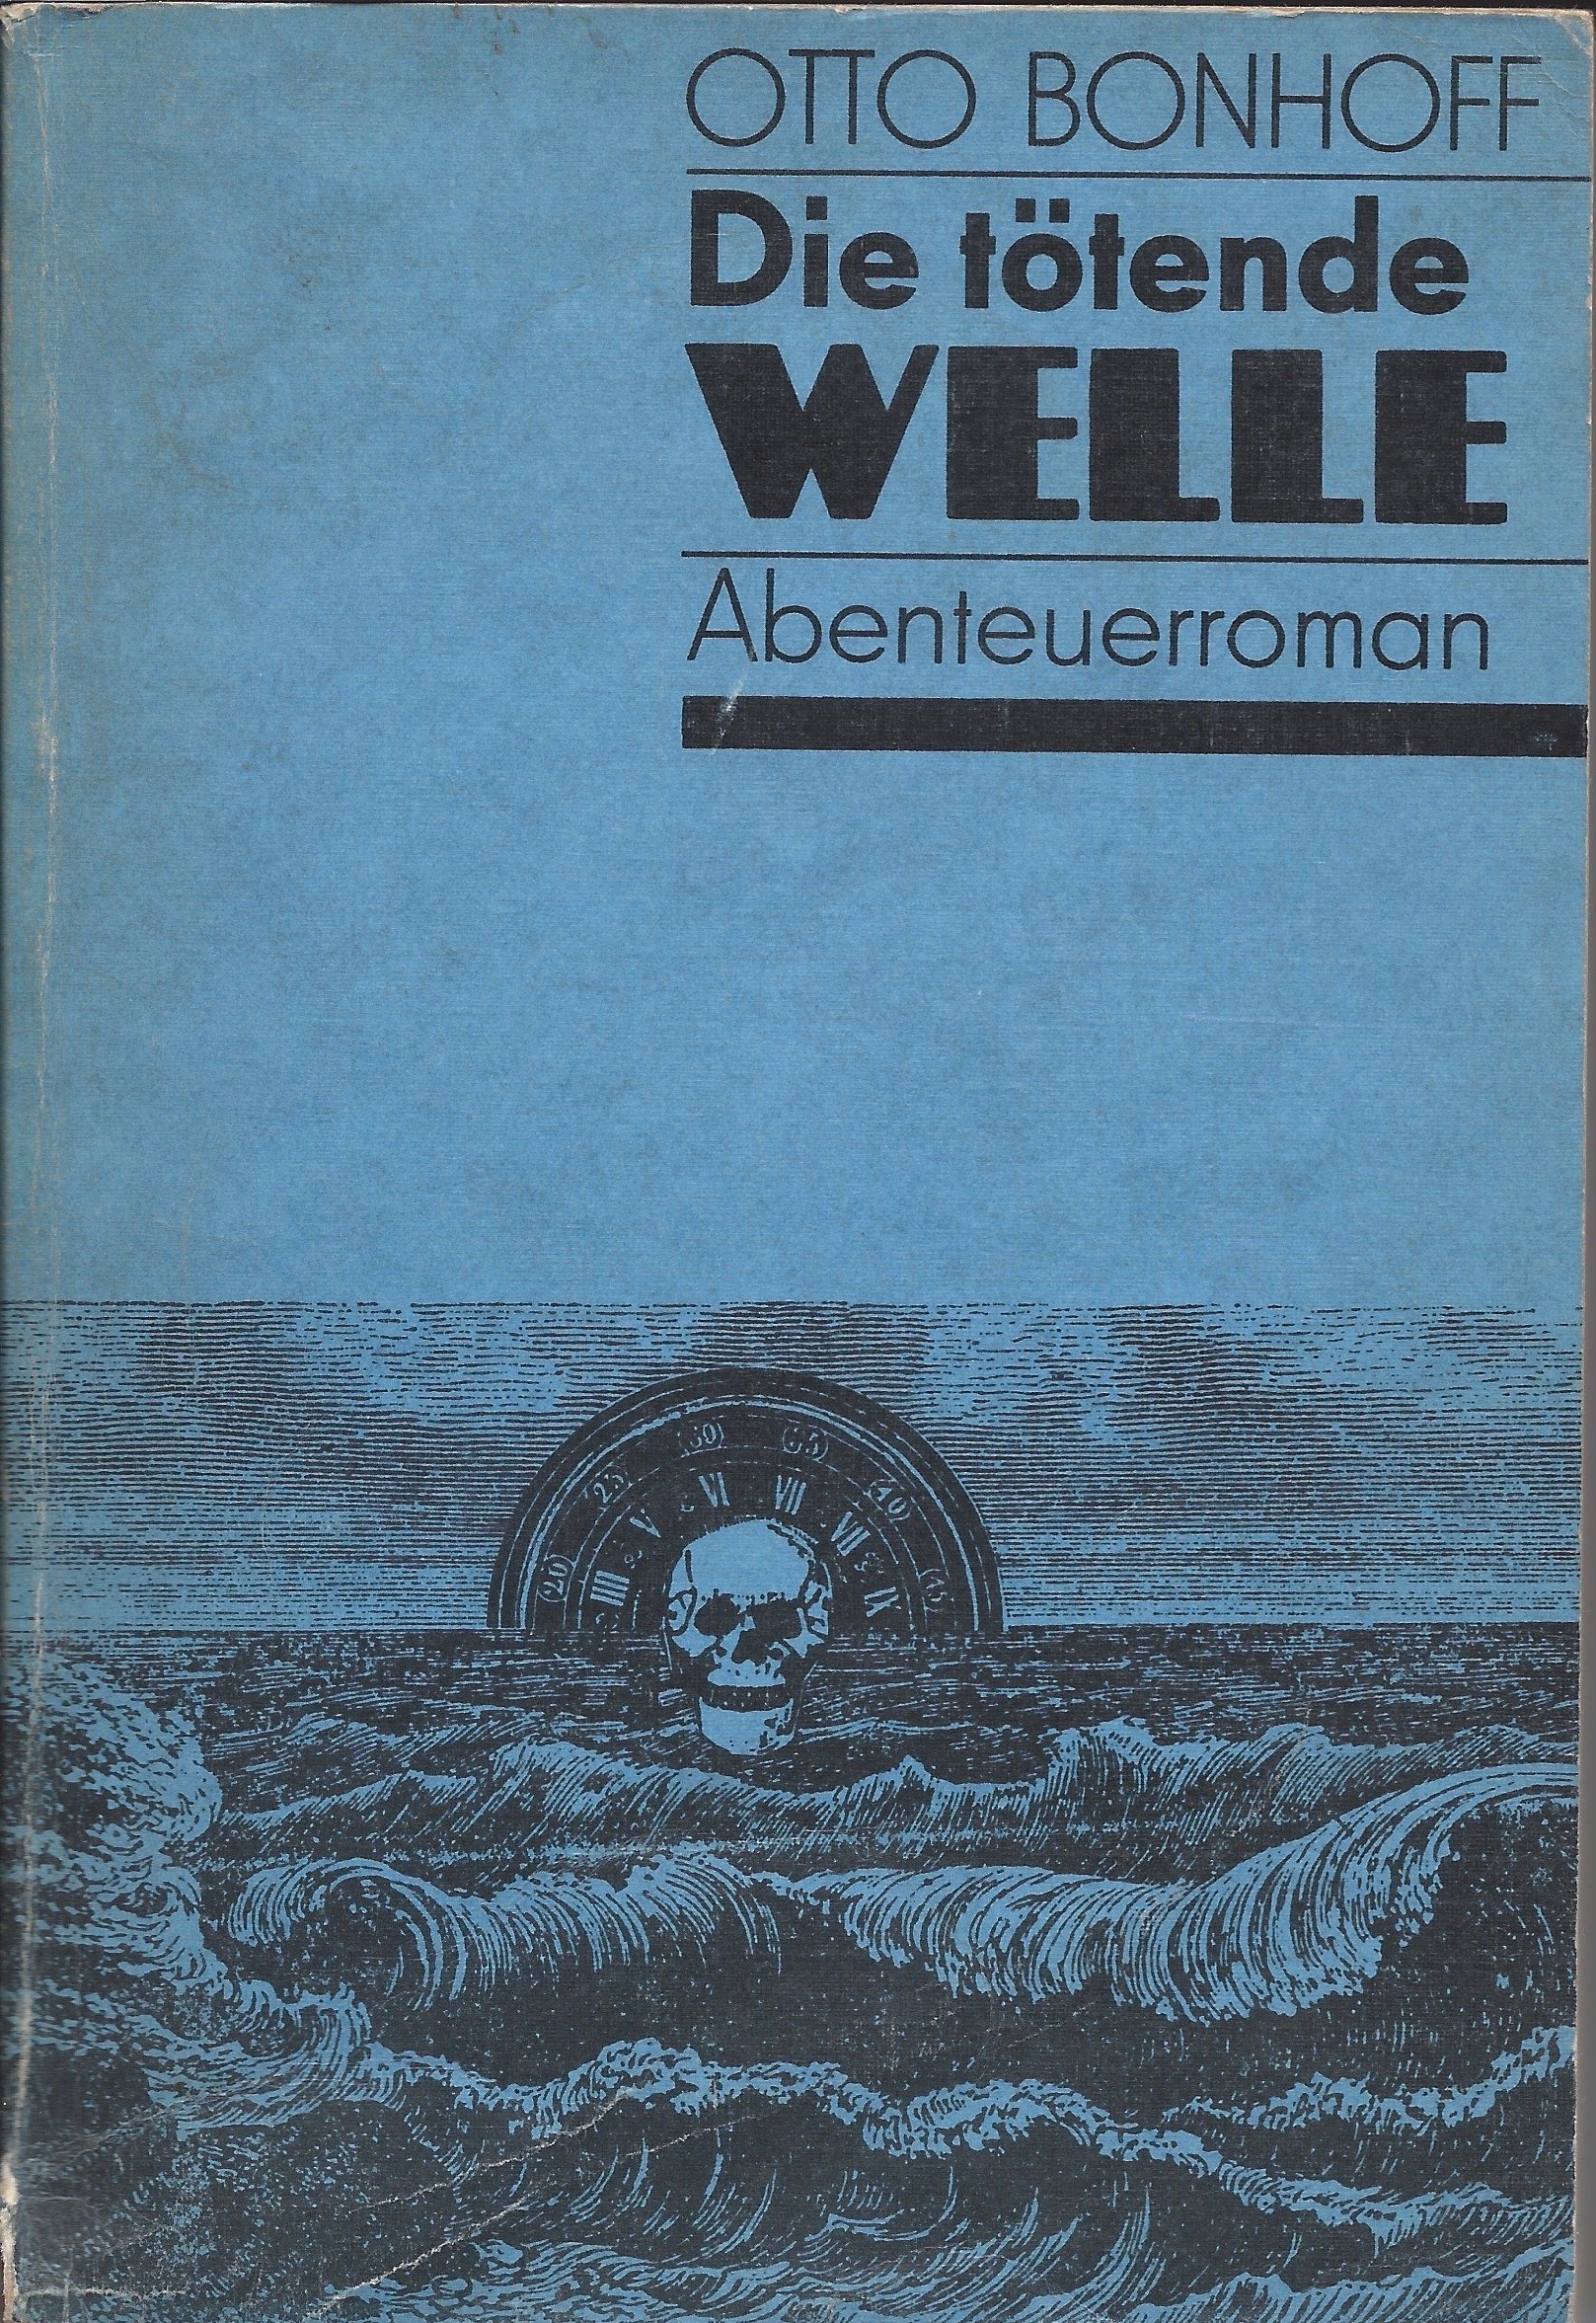 Titelseite vom Buch "Die tötende Welle" von Otto Bonhoff, Mitteldeutscher Verlag Halle-Leipzig, 1979